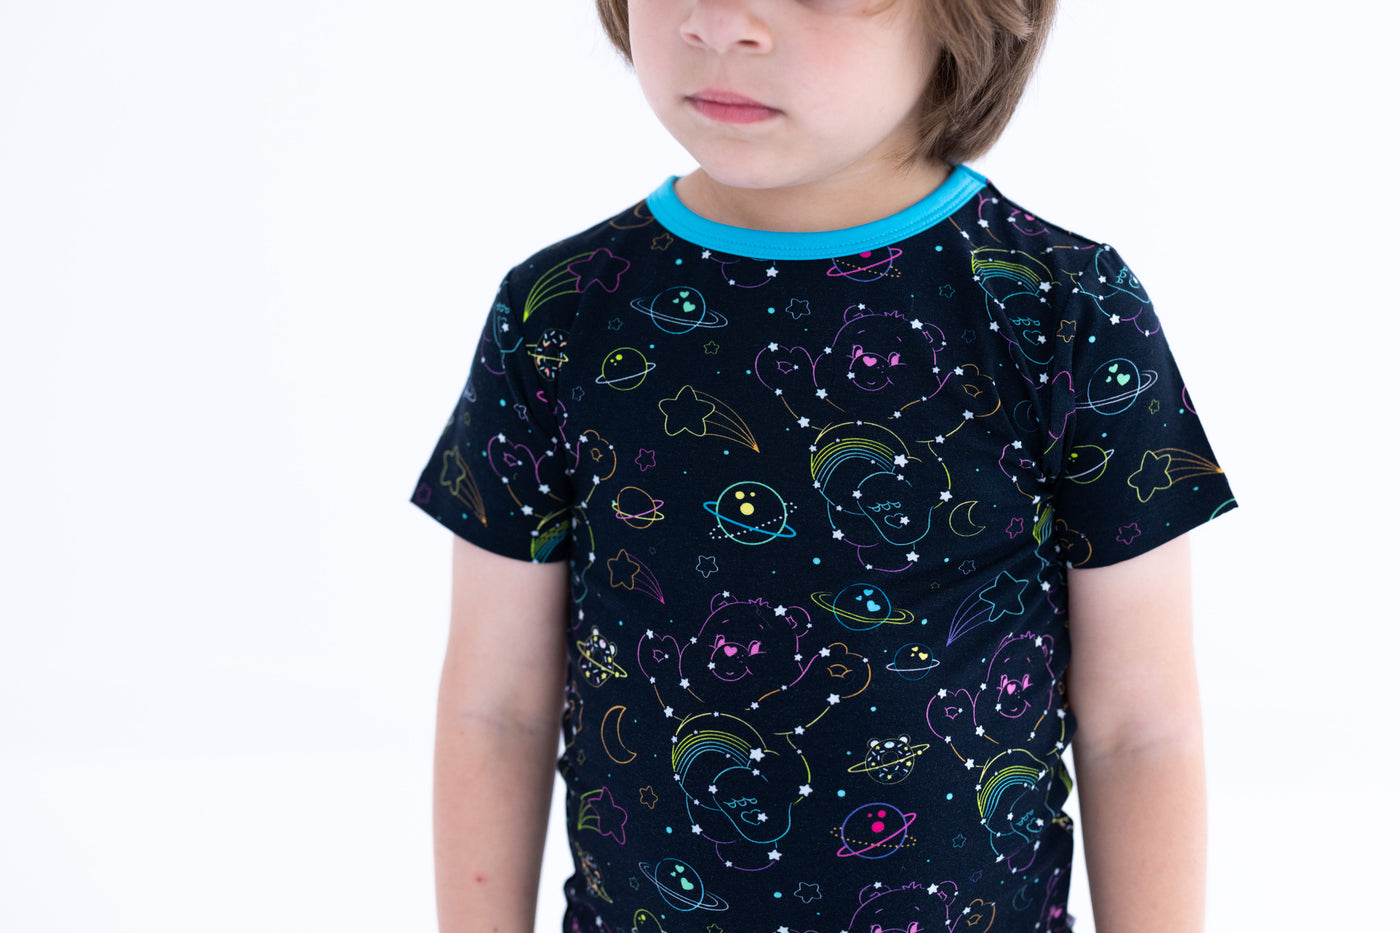 Care Bears™ Cosmic Constellations 2-piece pajamas